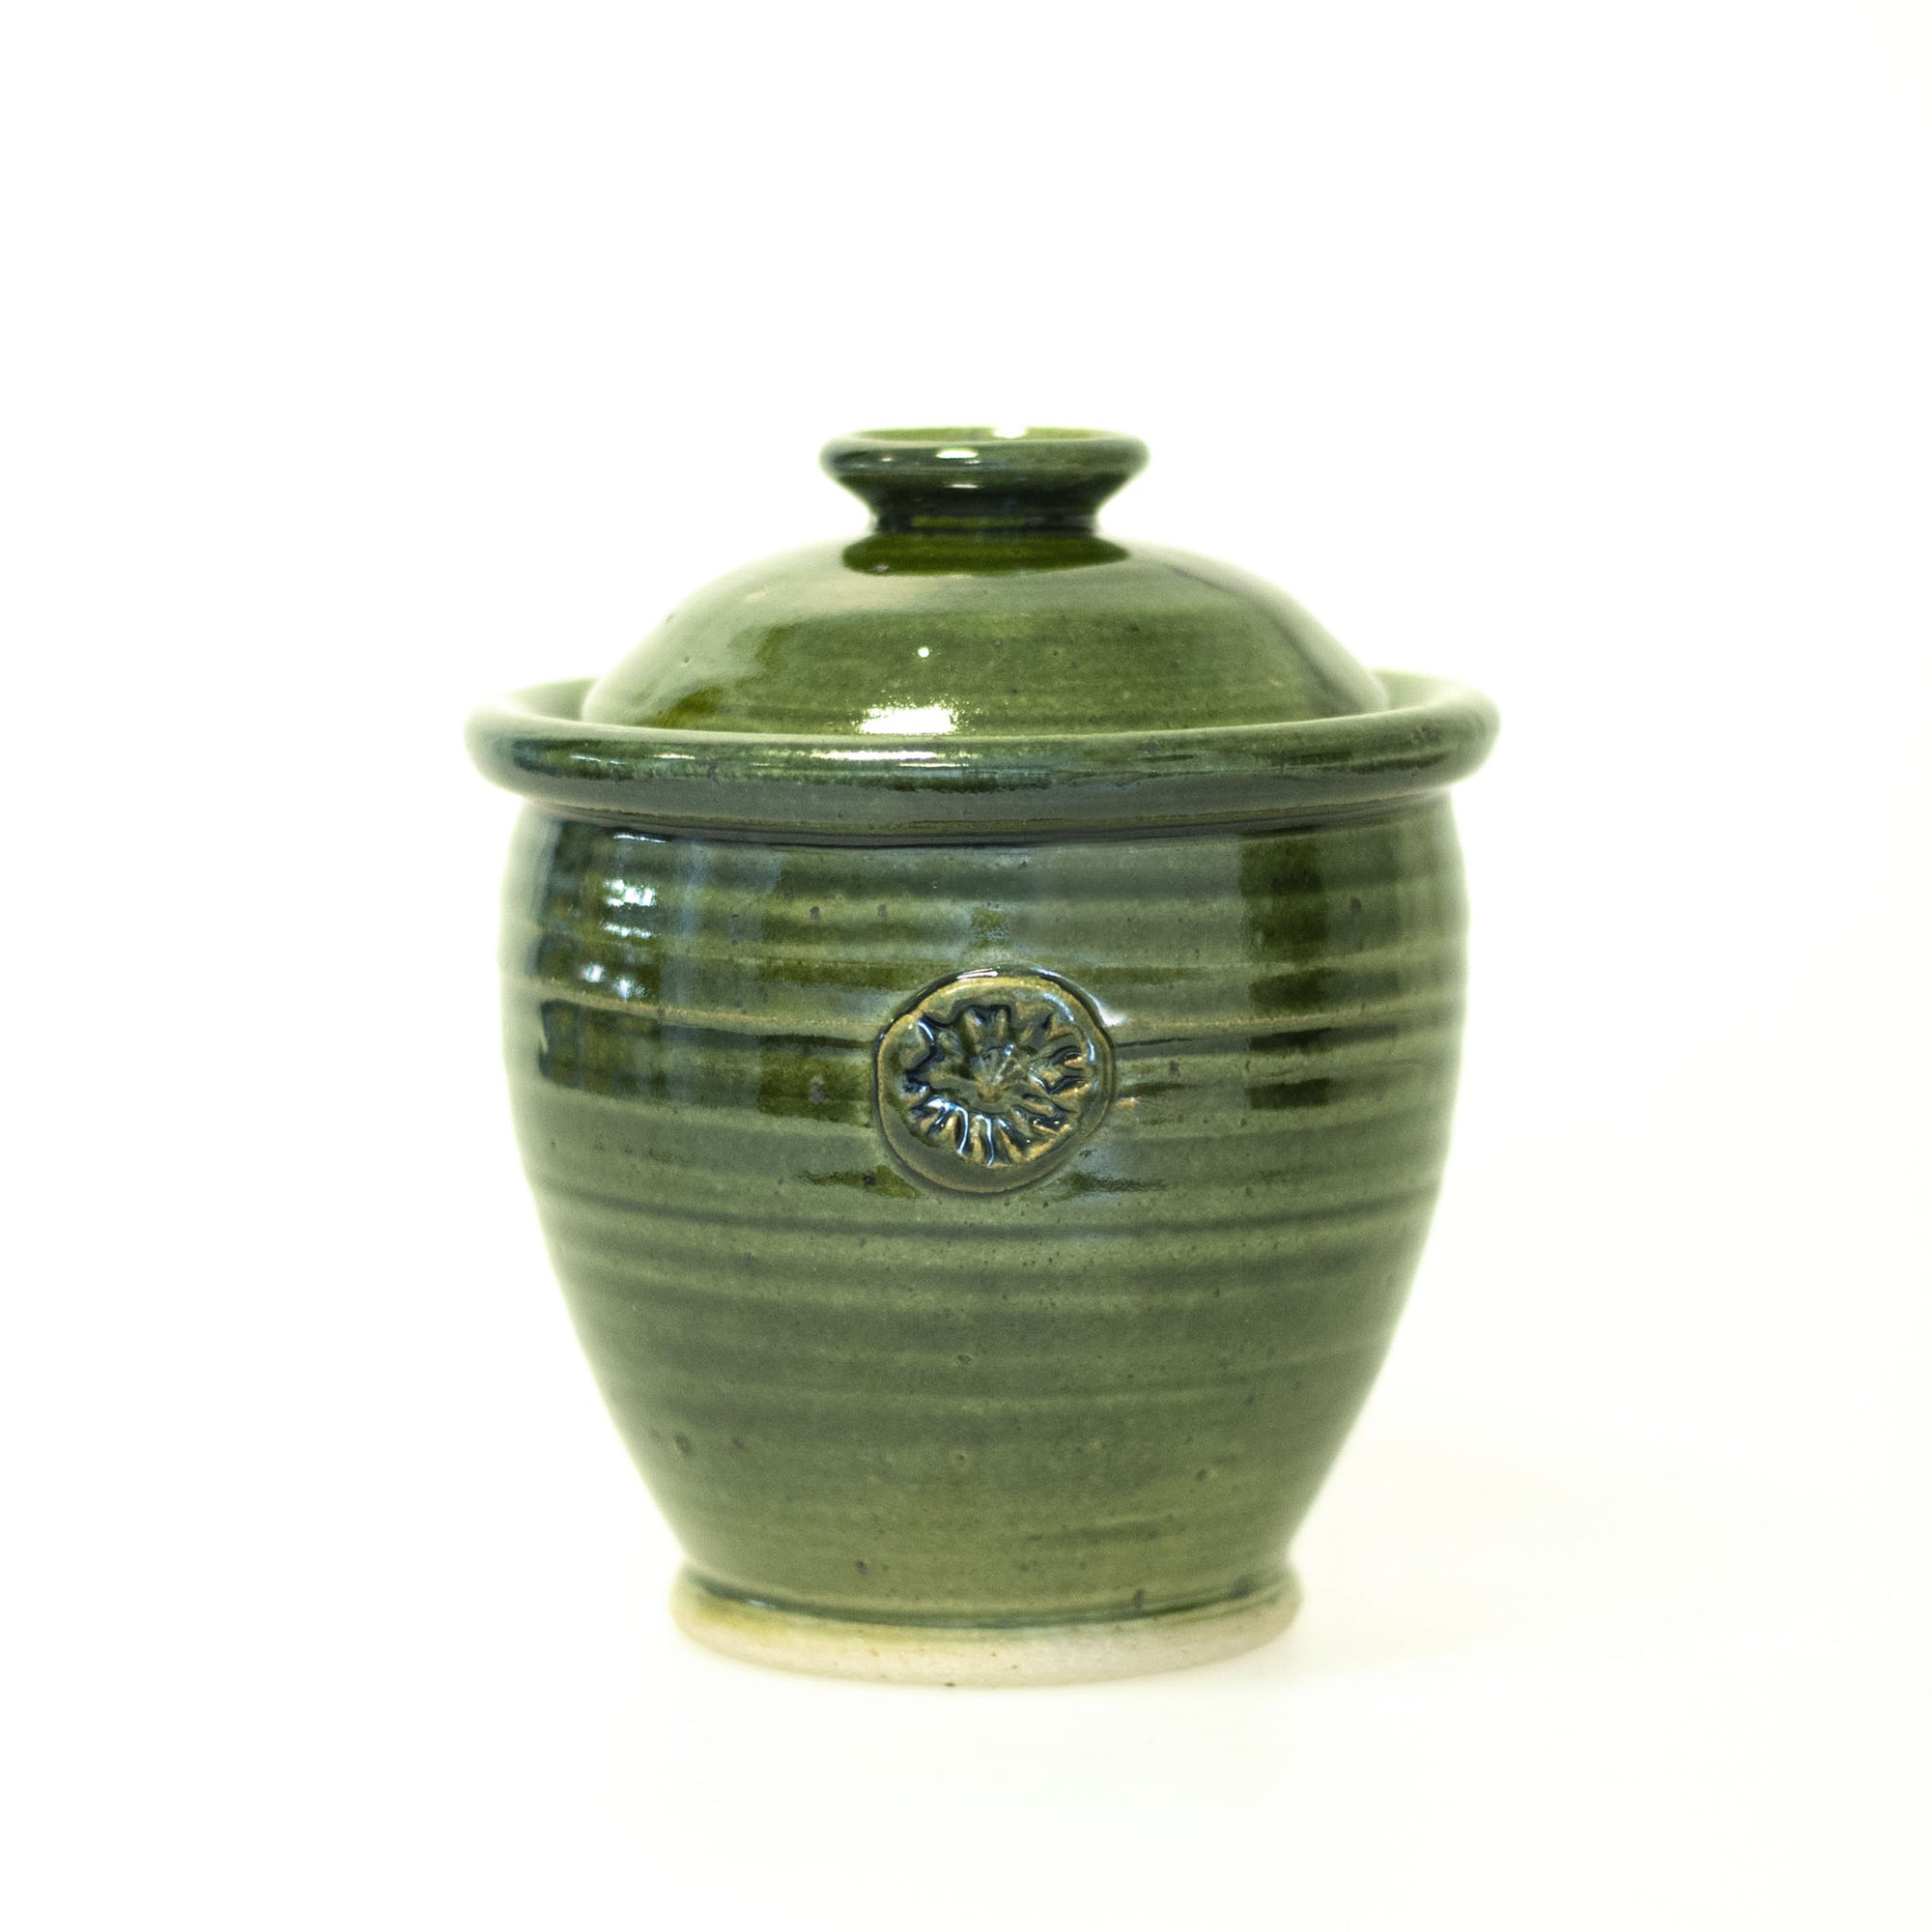 Avtryck - handdrejad burk med lock i keramik. Grön glasyr